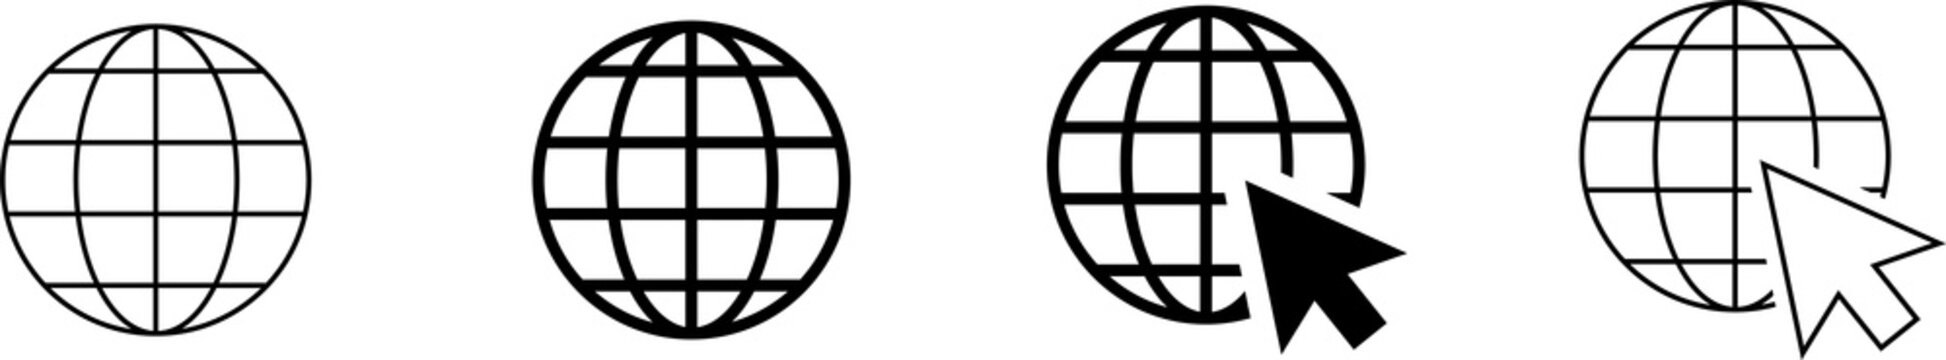 Globe symbol icons set. World web icon www earth globe icons. Website icon set. PNG image